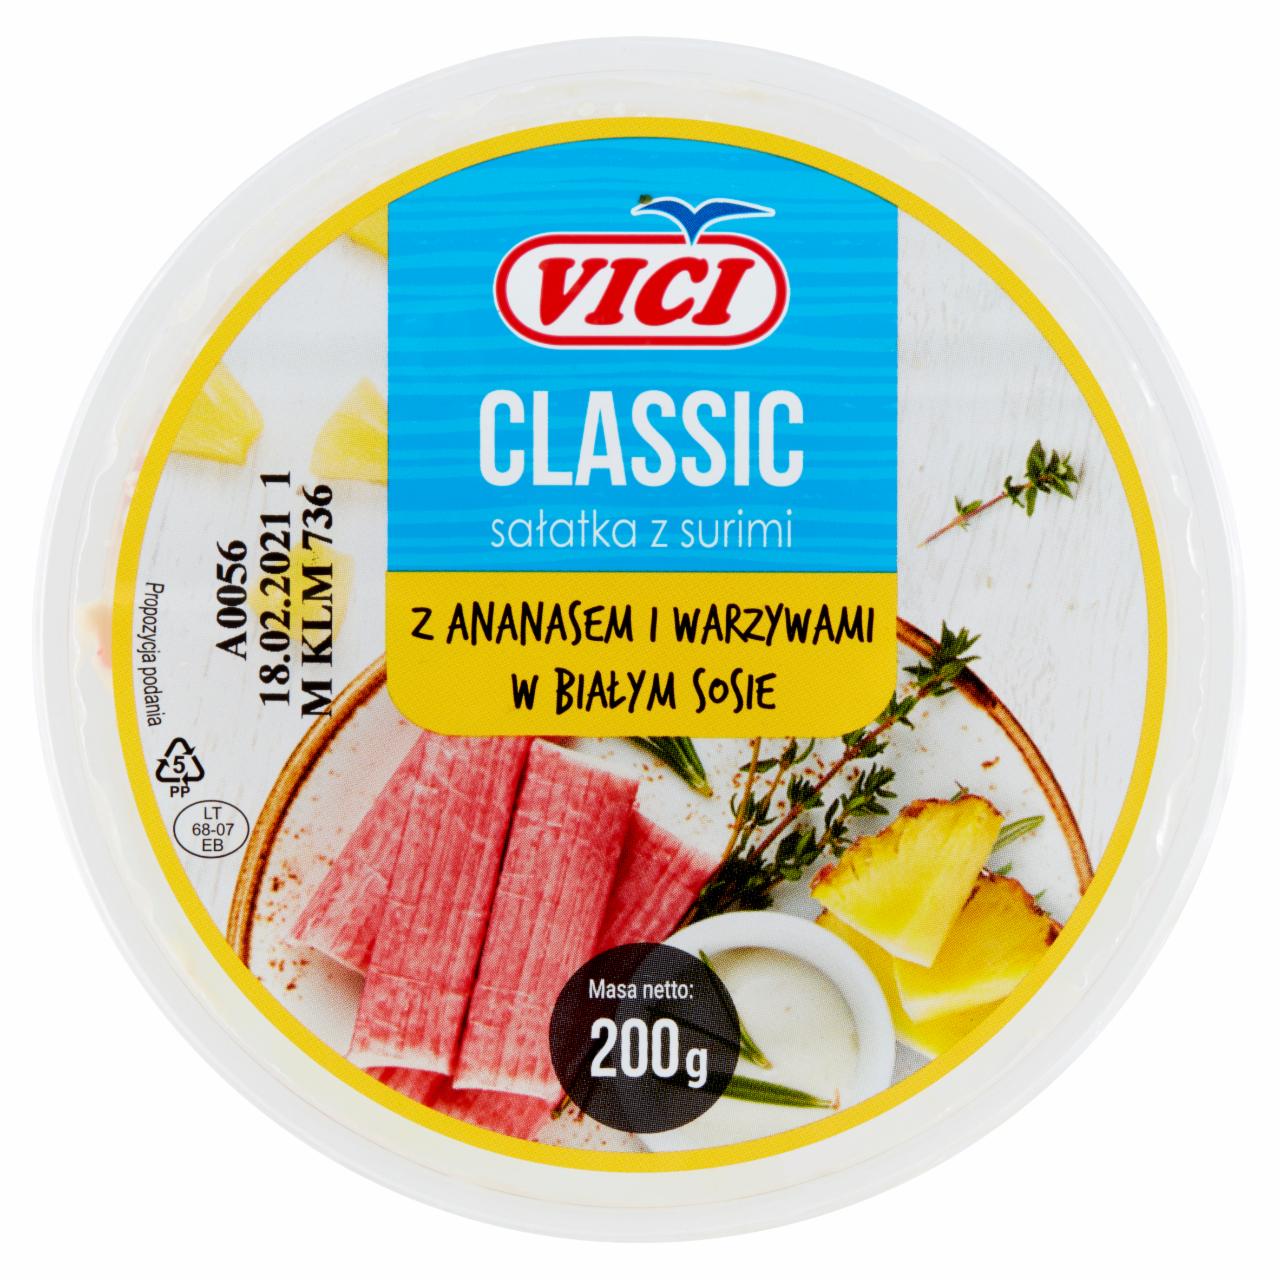 Zdjęcia - Vici Classic Sałatka surimi z ananasem i warzywami w białym sosie 200 g